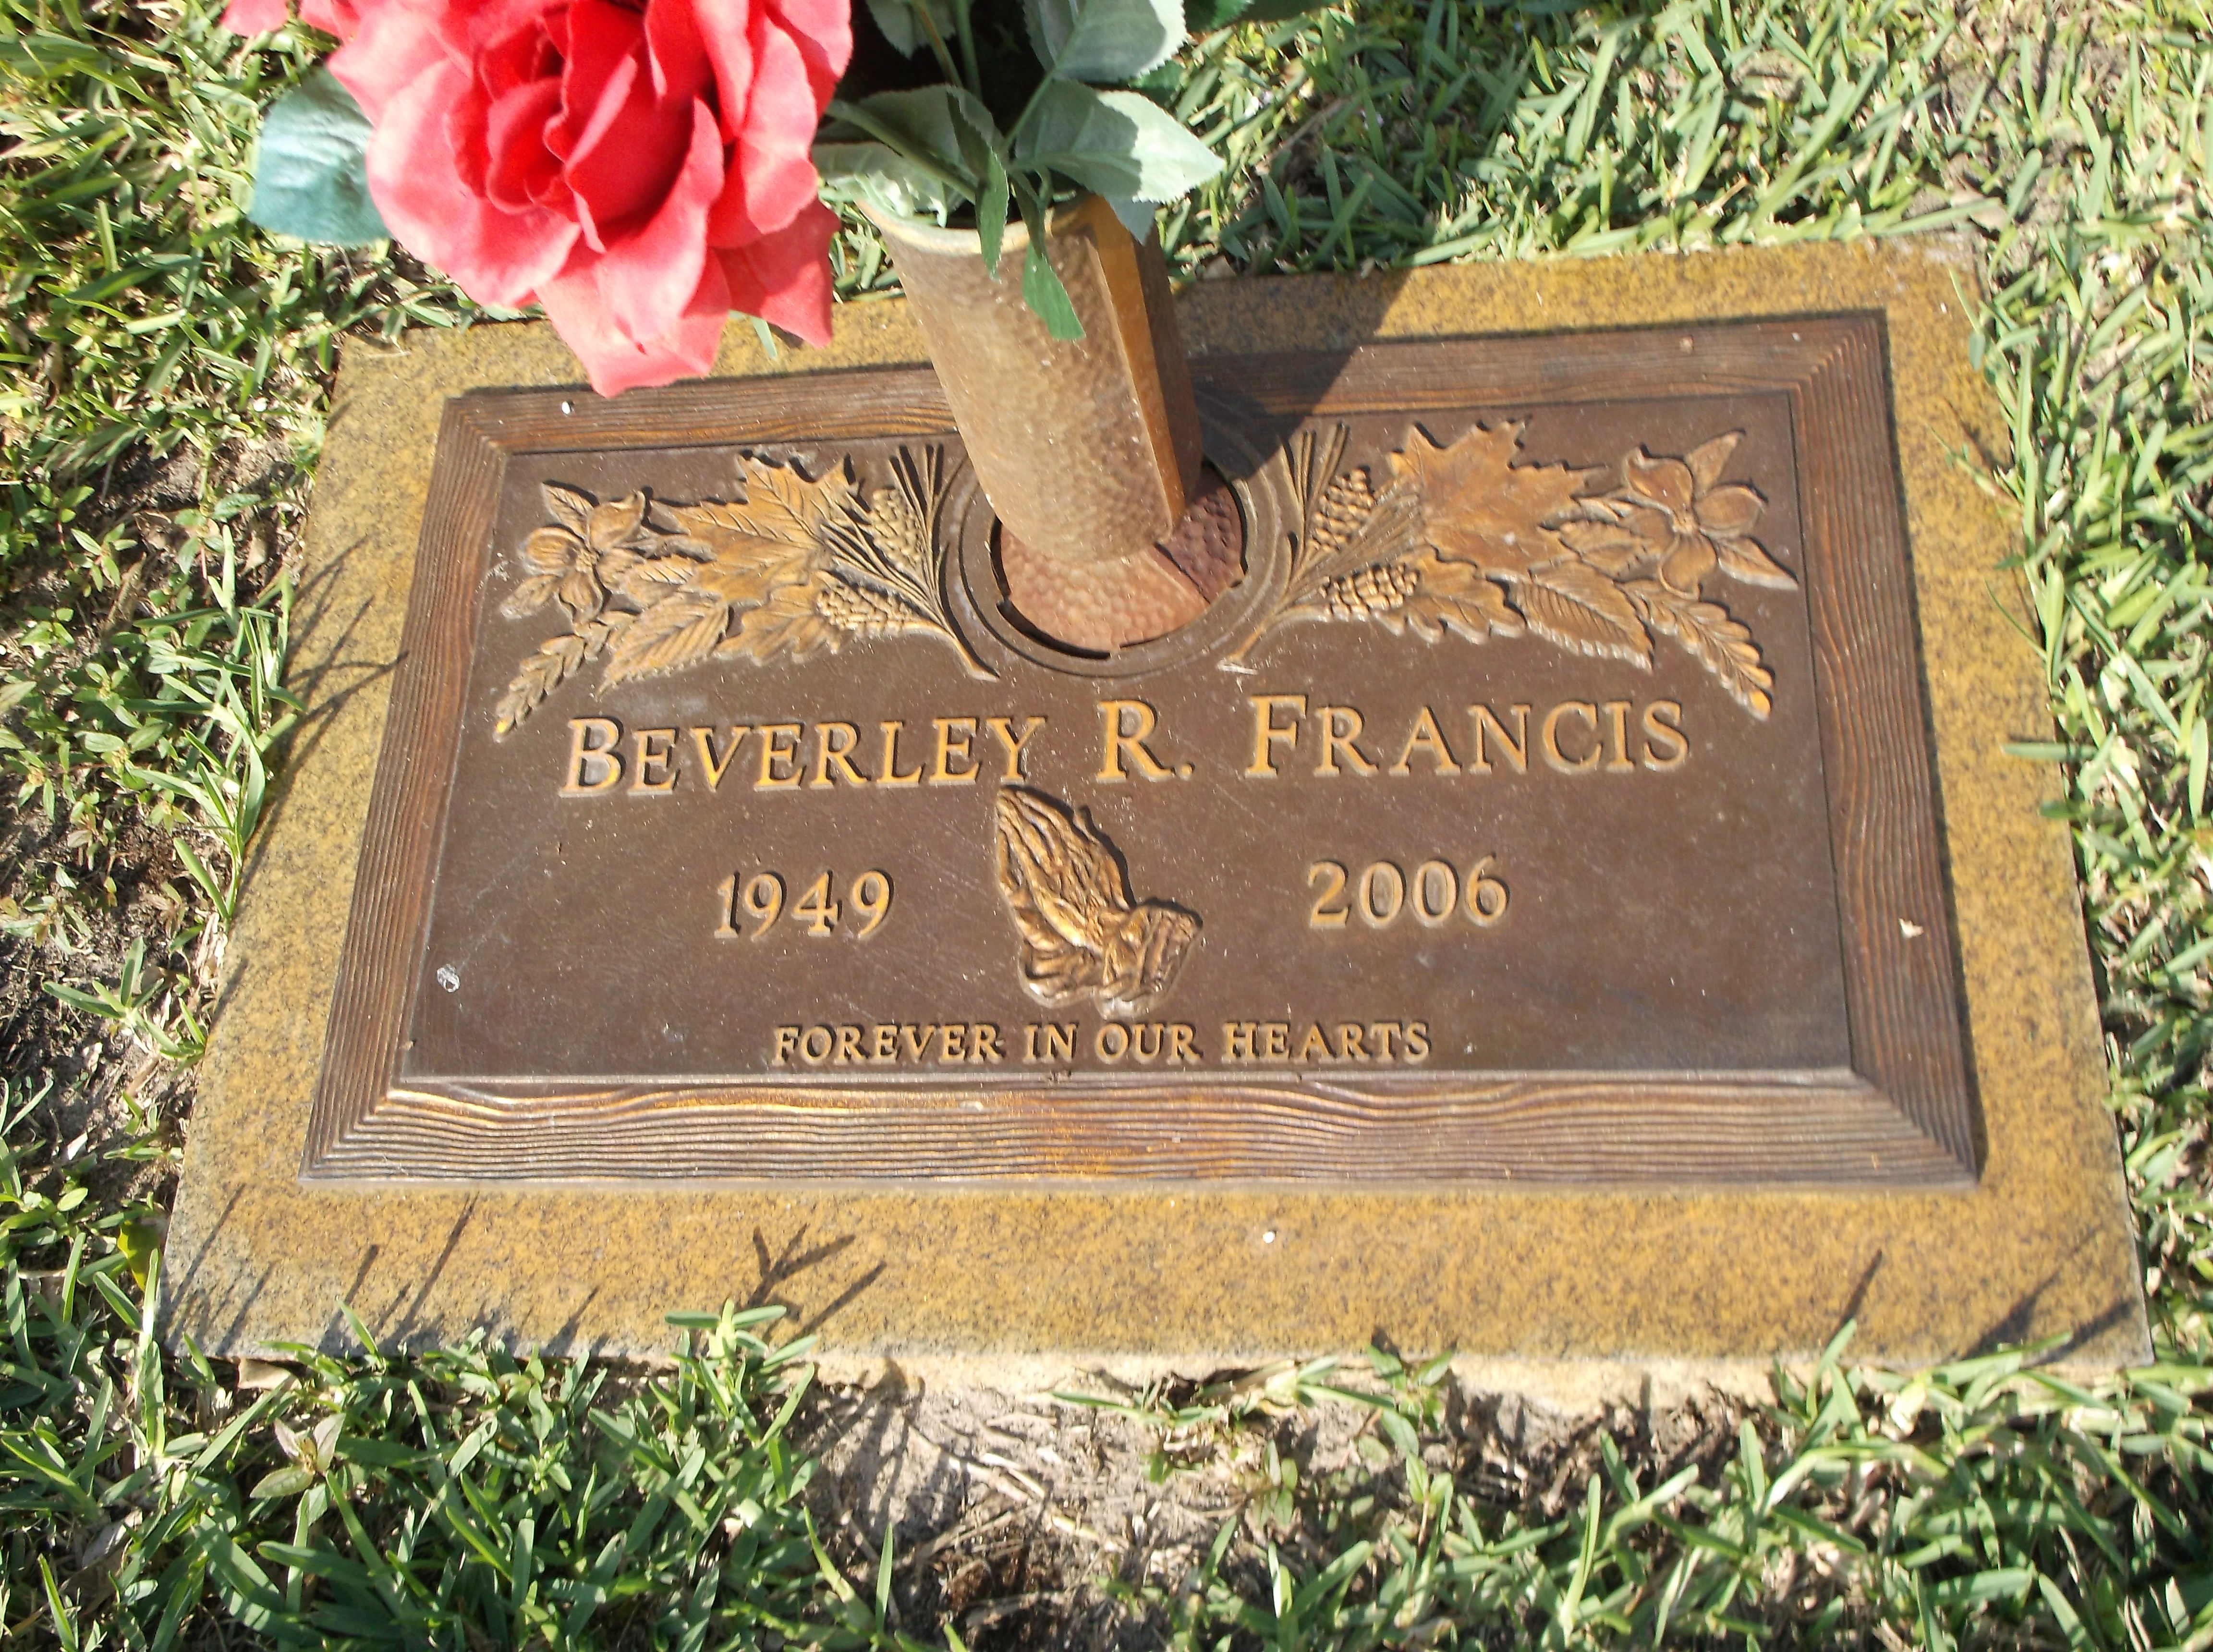 Beverley R Francis